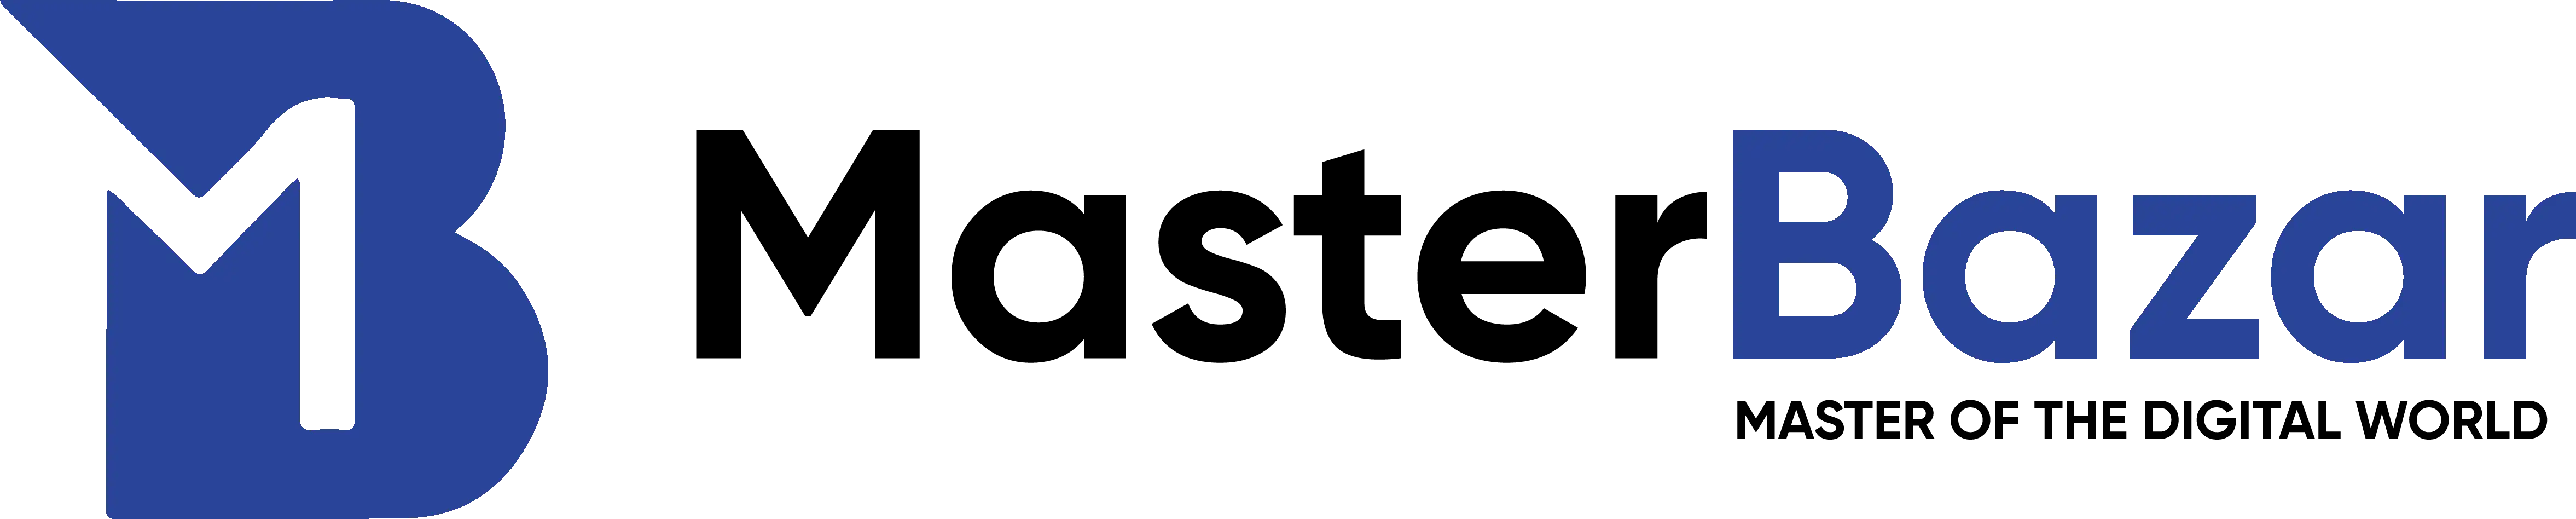 masterbazar-logo